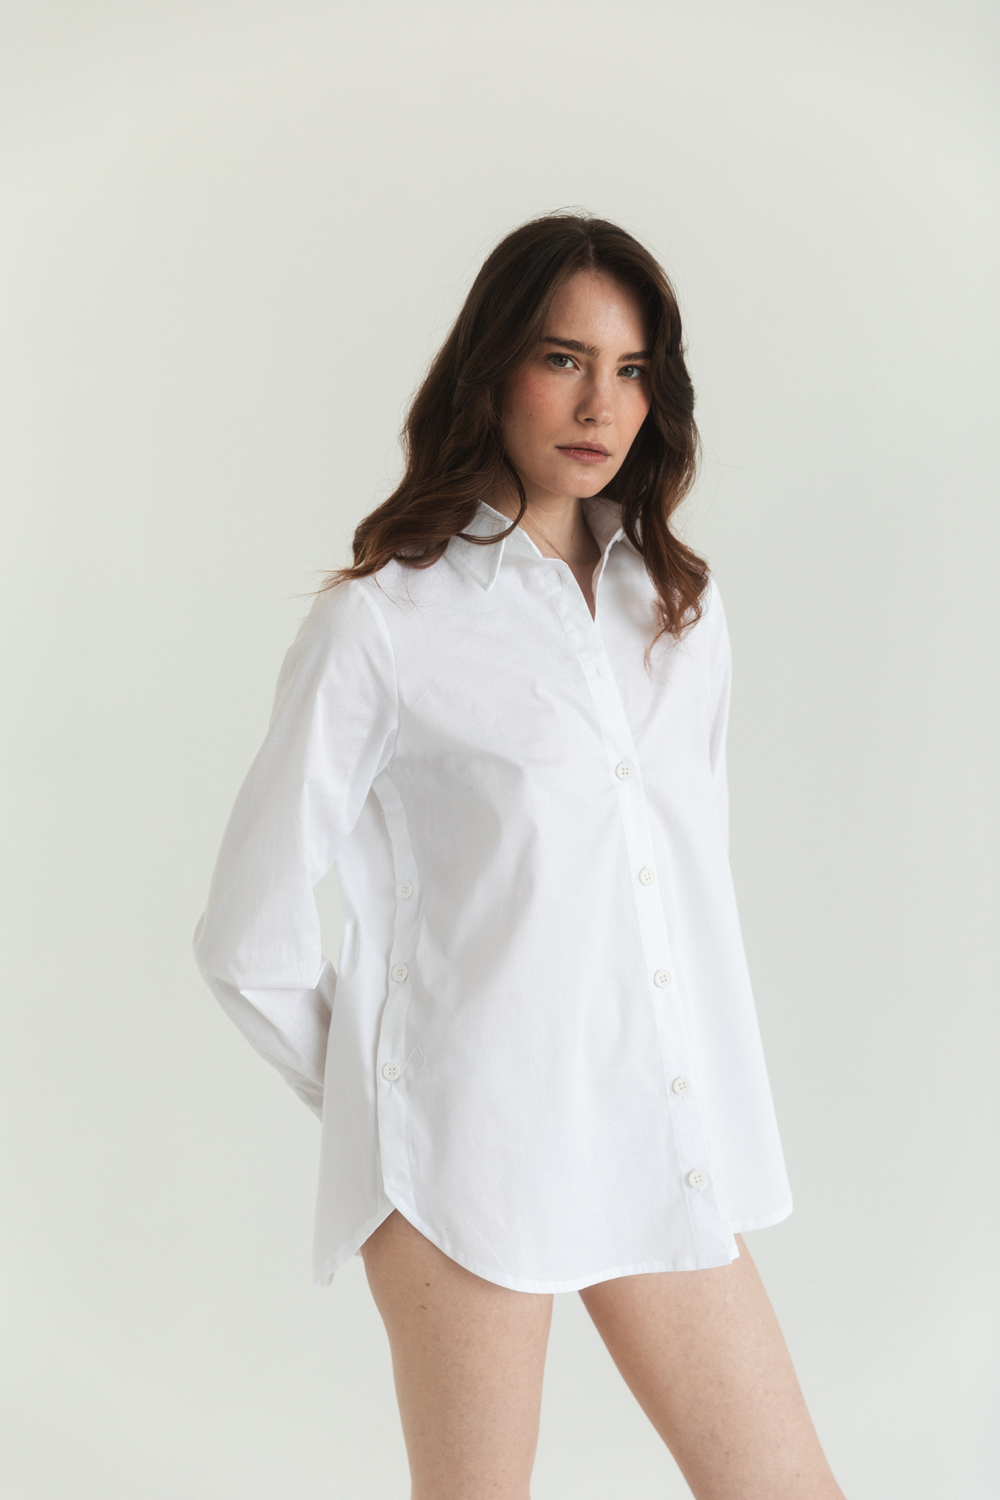 Белая котоновая рубашка с функциональными пуговицами по бокам